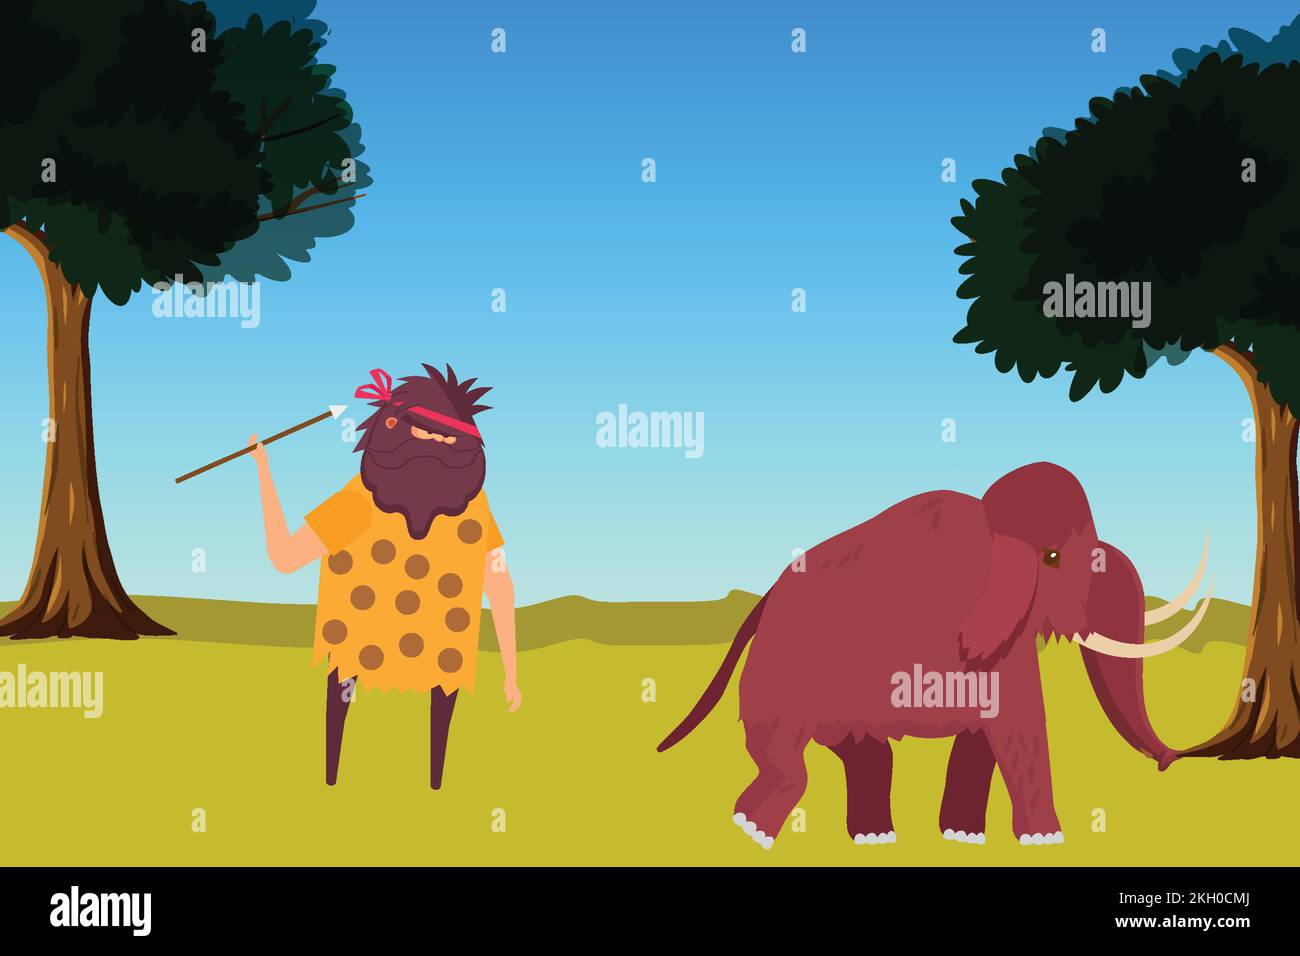 Ein Höhlenmensch jagt ein Mammut mit einem Speer in einem Dschungelvektor. Prähistorische Höhlenjagd und Ernährungsgewohnheit - Konzeptdarstellung. Höhlenbewohner mit langen s Stock Vektor